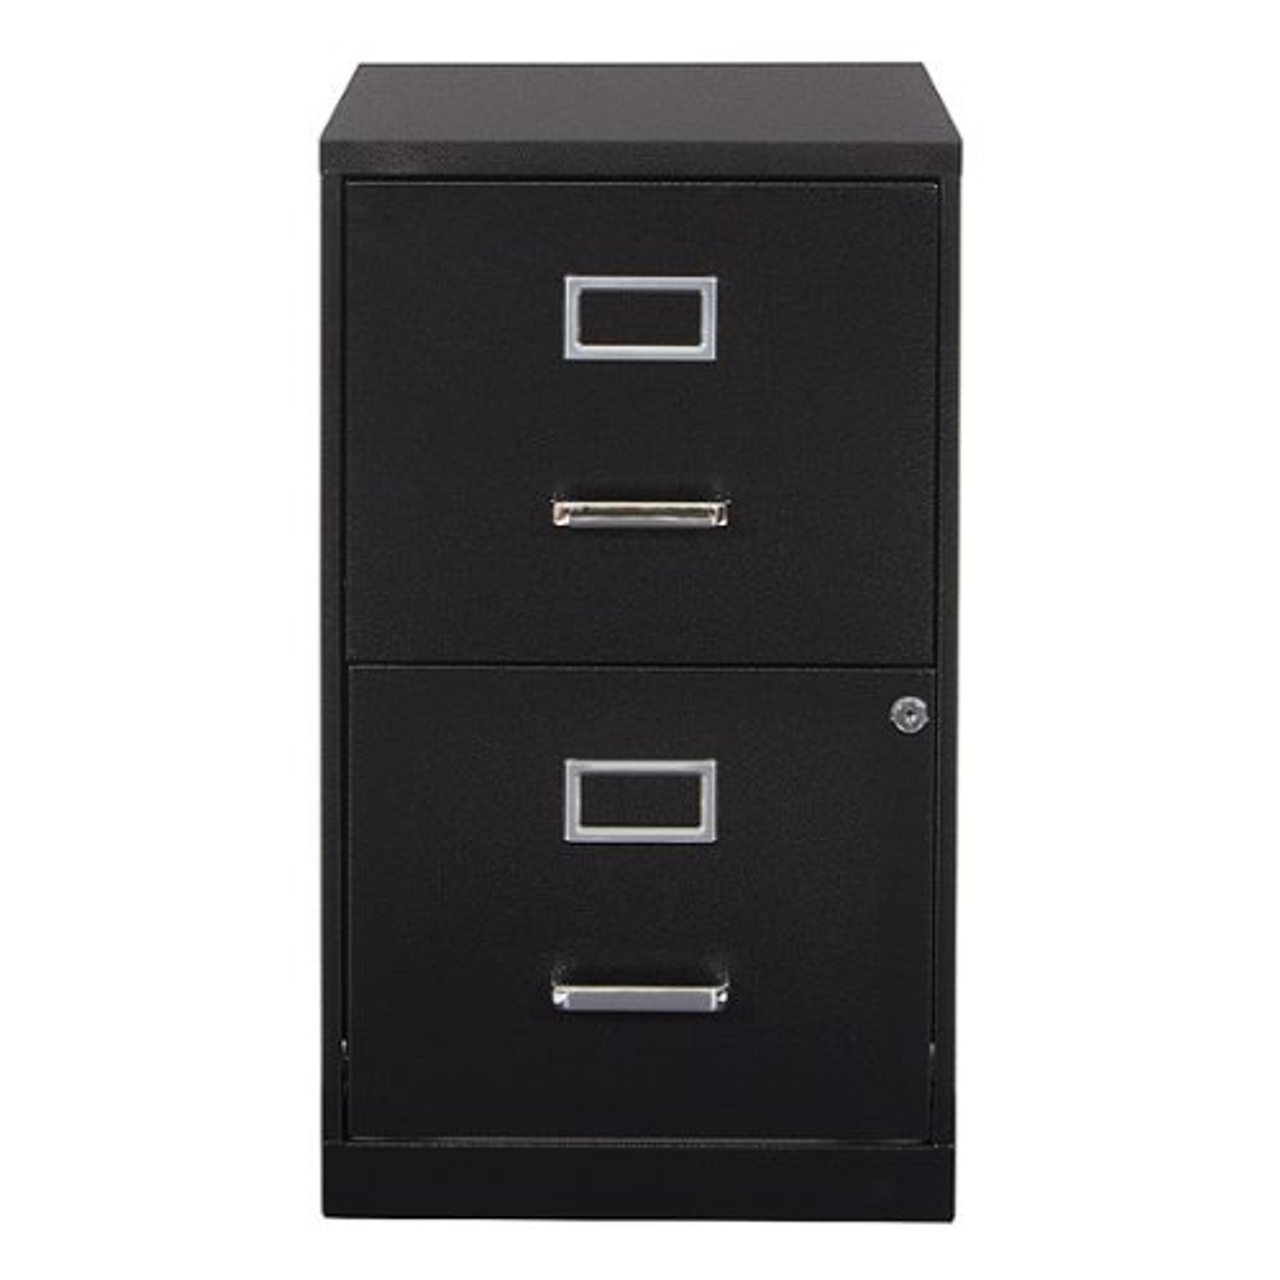 OSP Home Furnishings - 2 Drawer Locking Metal File Cabinet - Black